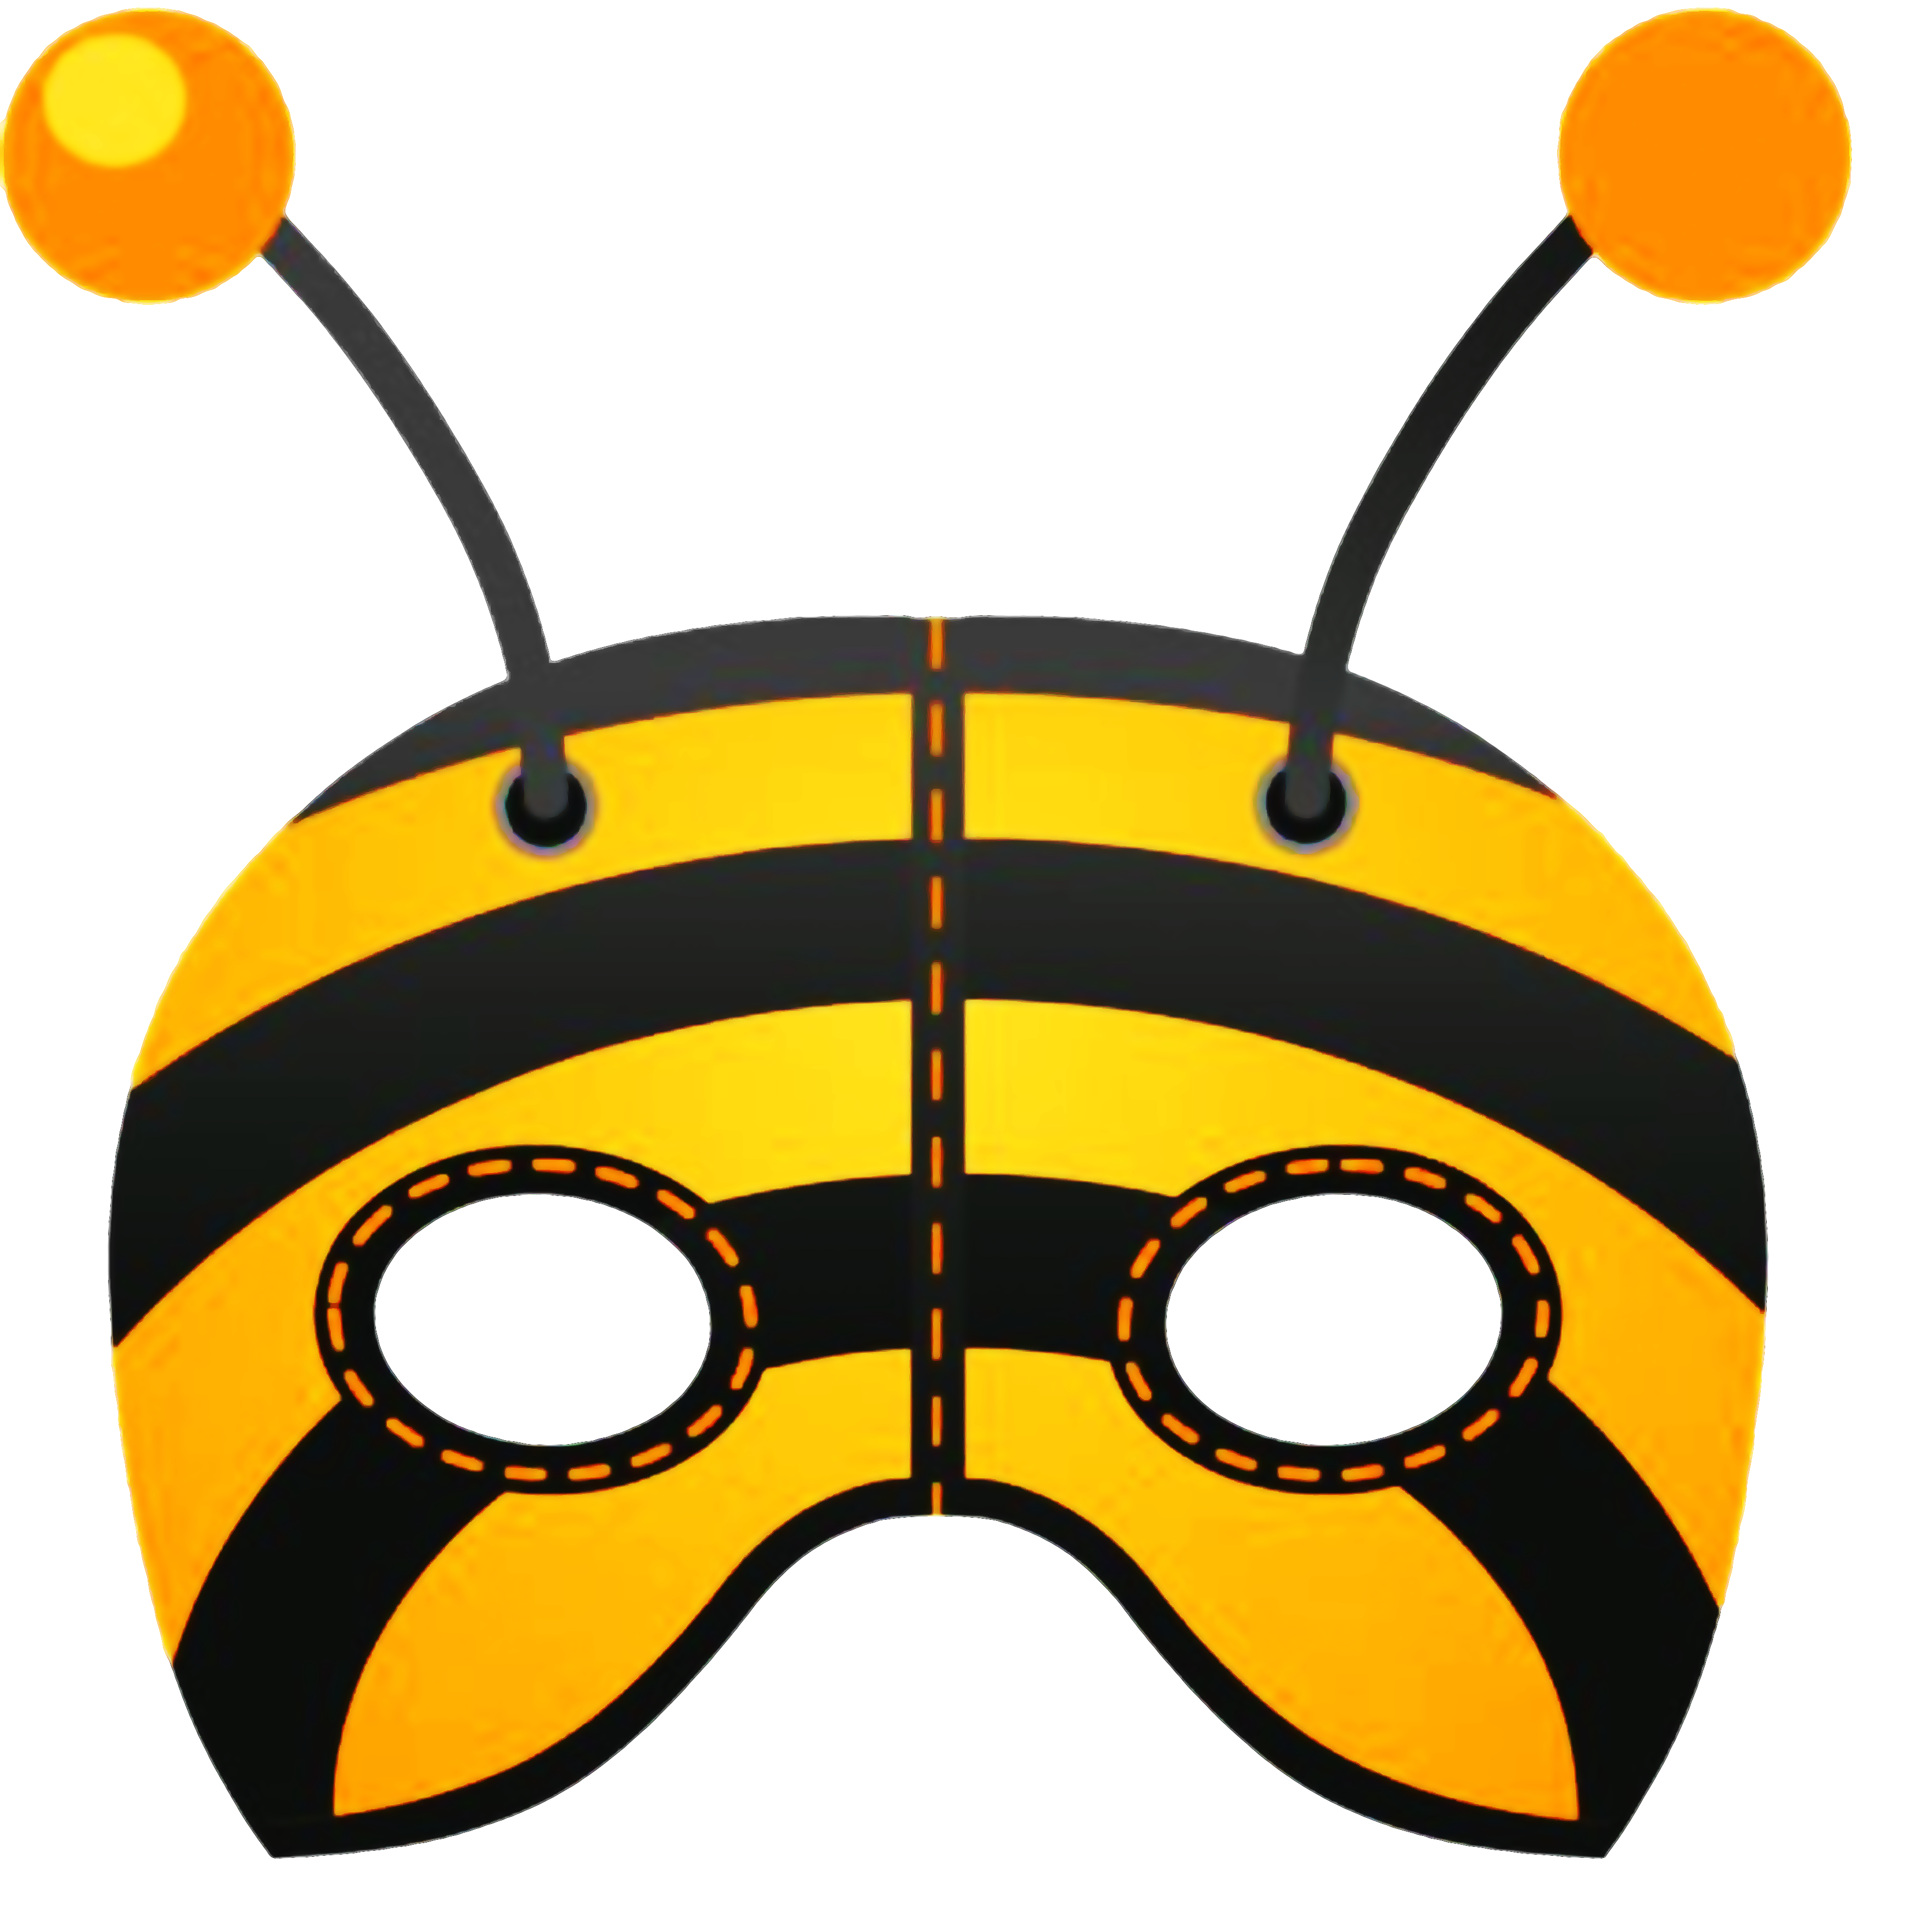 Маска пчелки. Маска Пчелка для детей. Маска пчелы на голову. Маска пчелки на голову для ребенка. Маска жука на голову